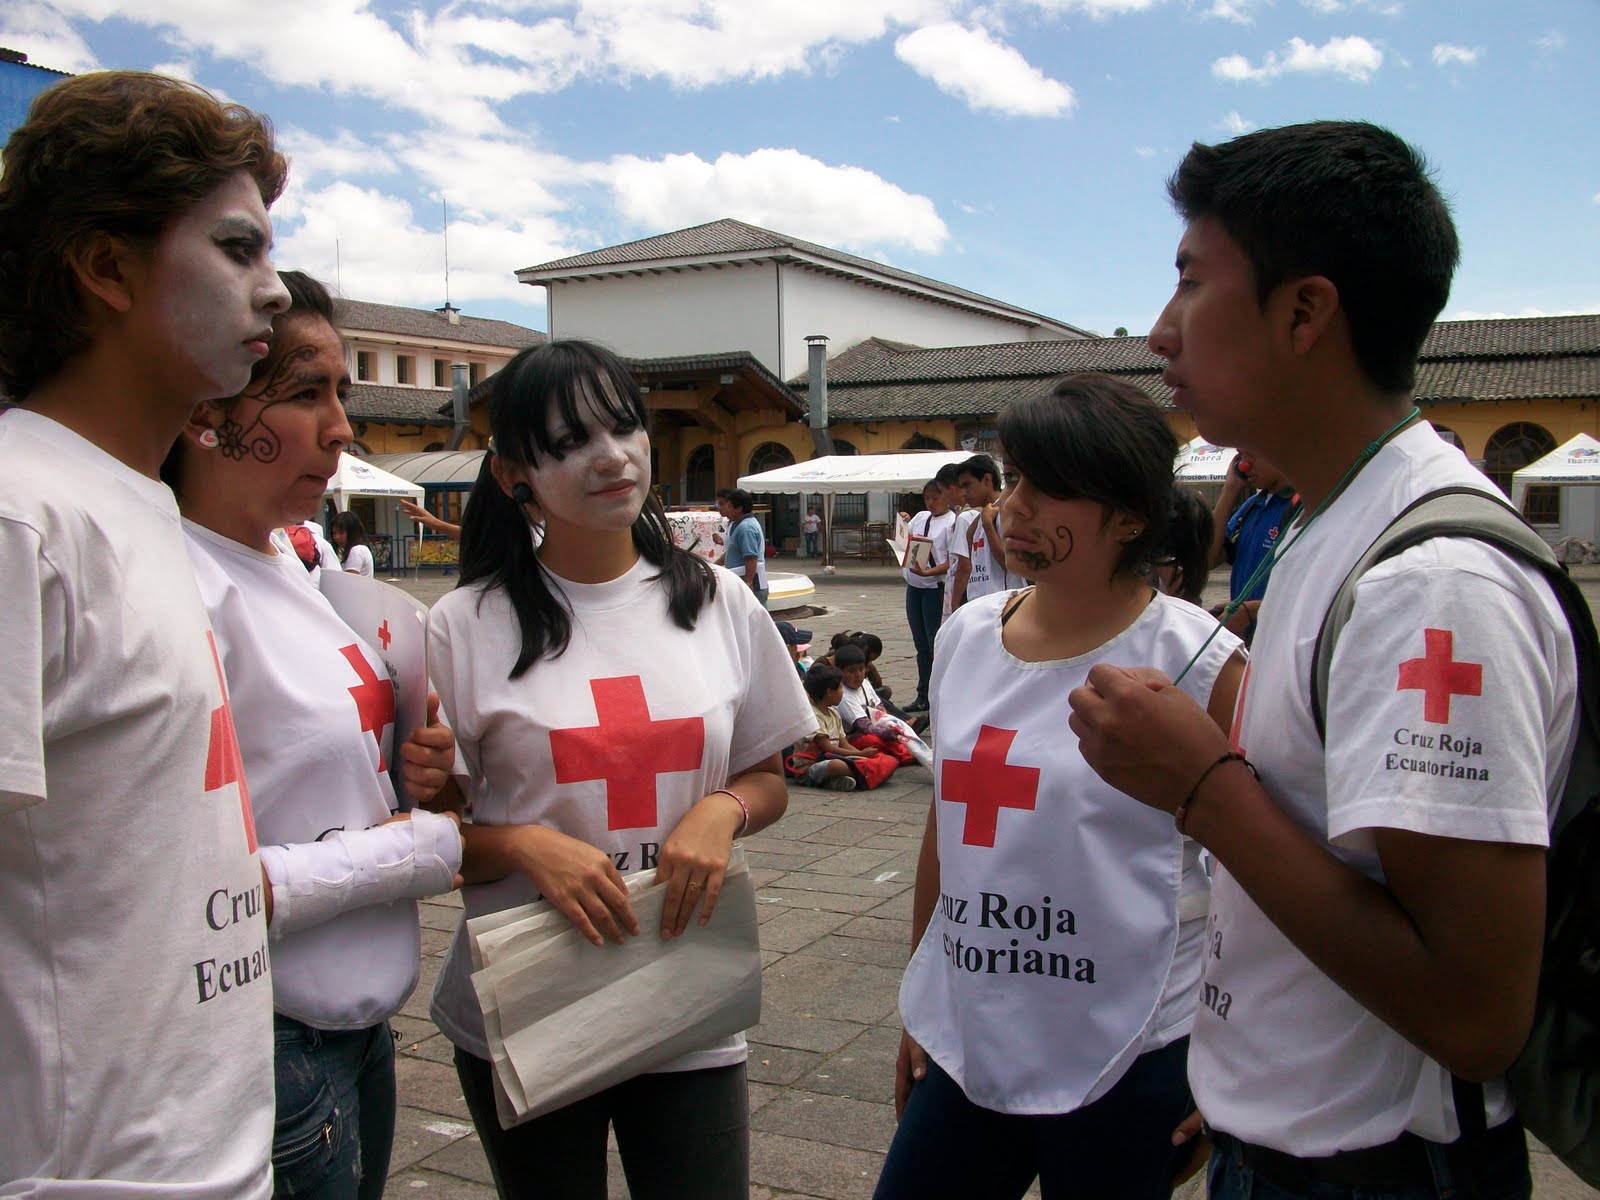 Somosdelmismobarro Campamento Vacacional De La Cruz Roja